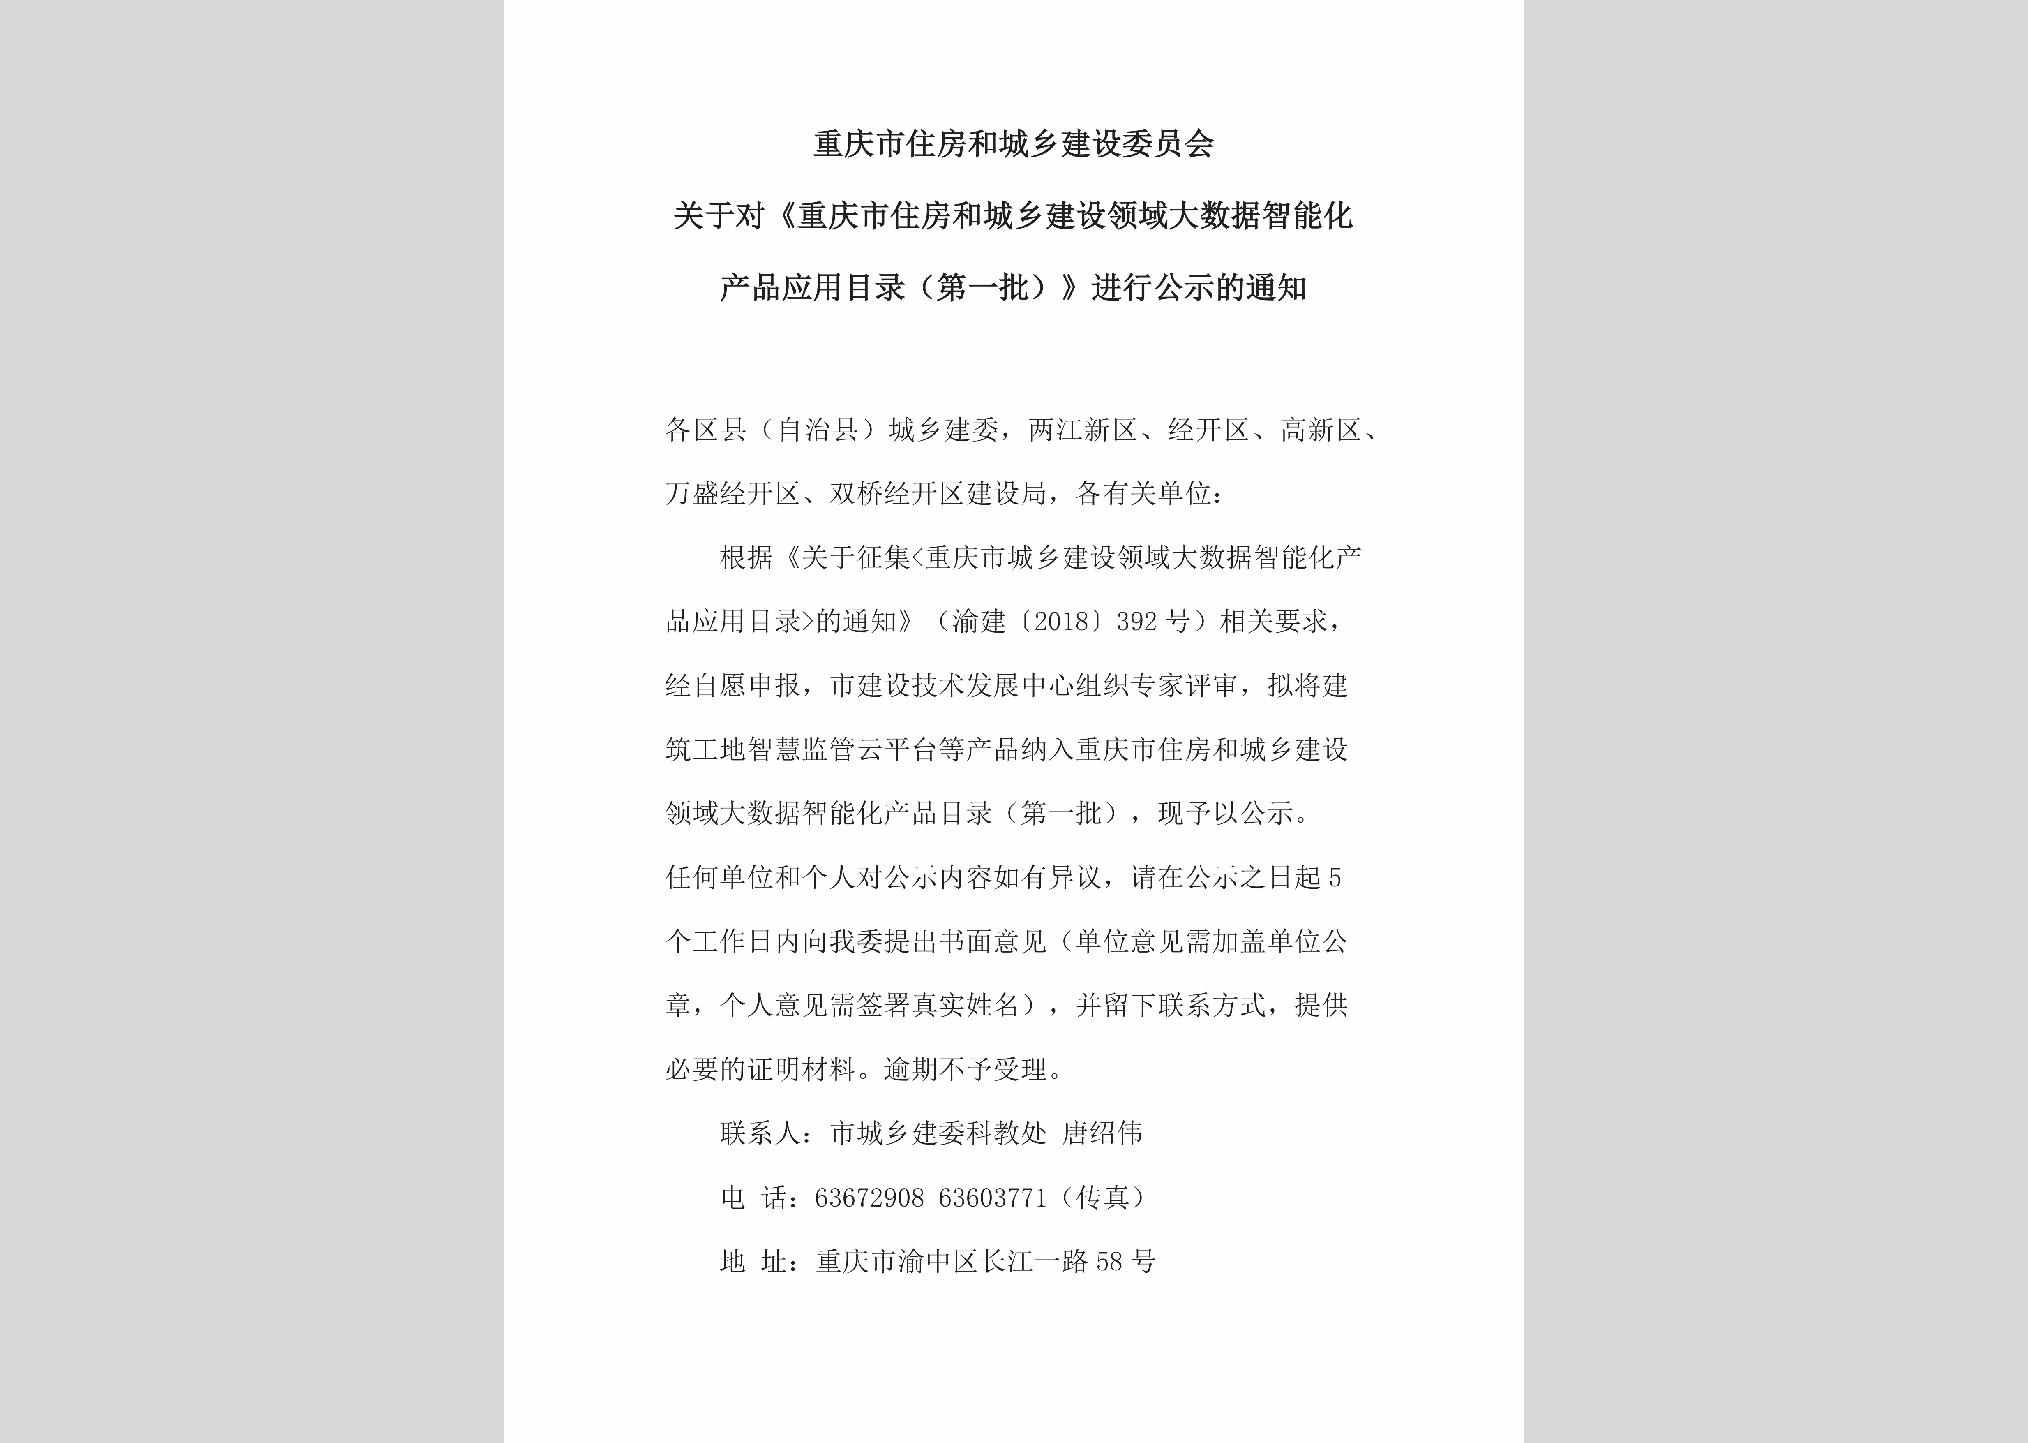 CQ-CXJSLYDS-2018：关于对《重庆市住房和城乡建设领域大数据智能化产品应用目录（第一批）》进行公示的通知